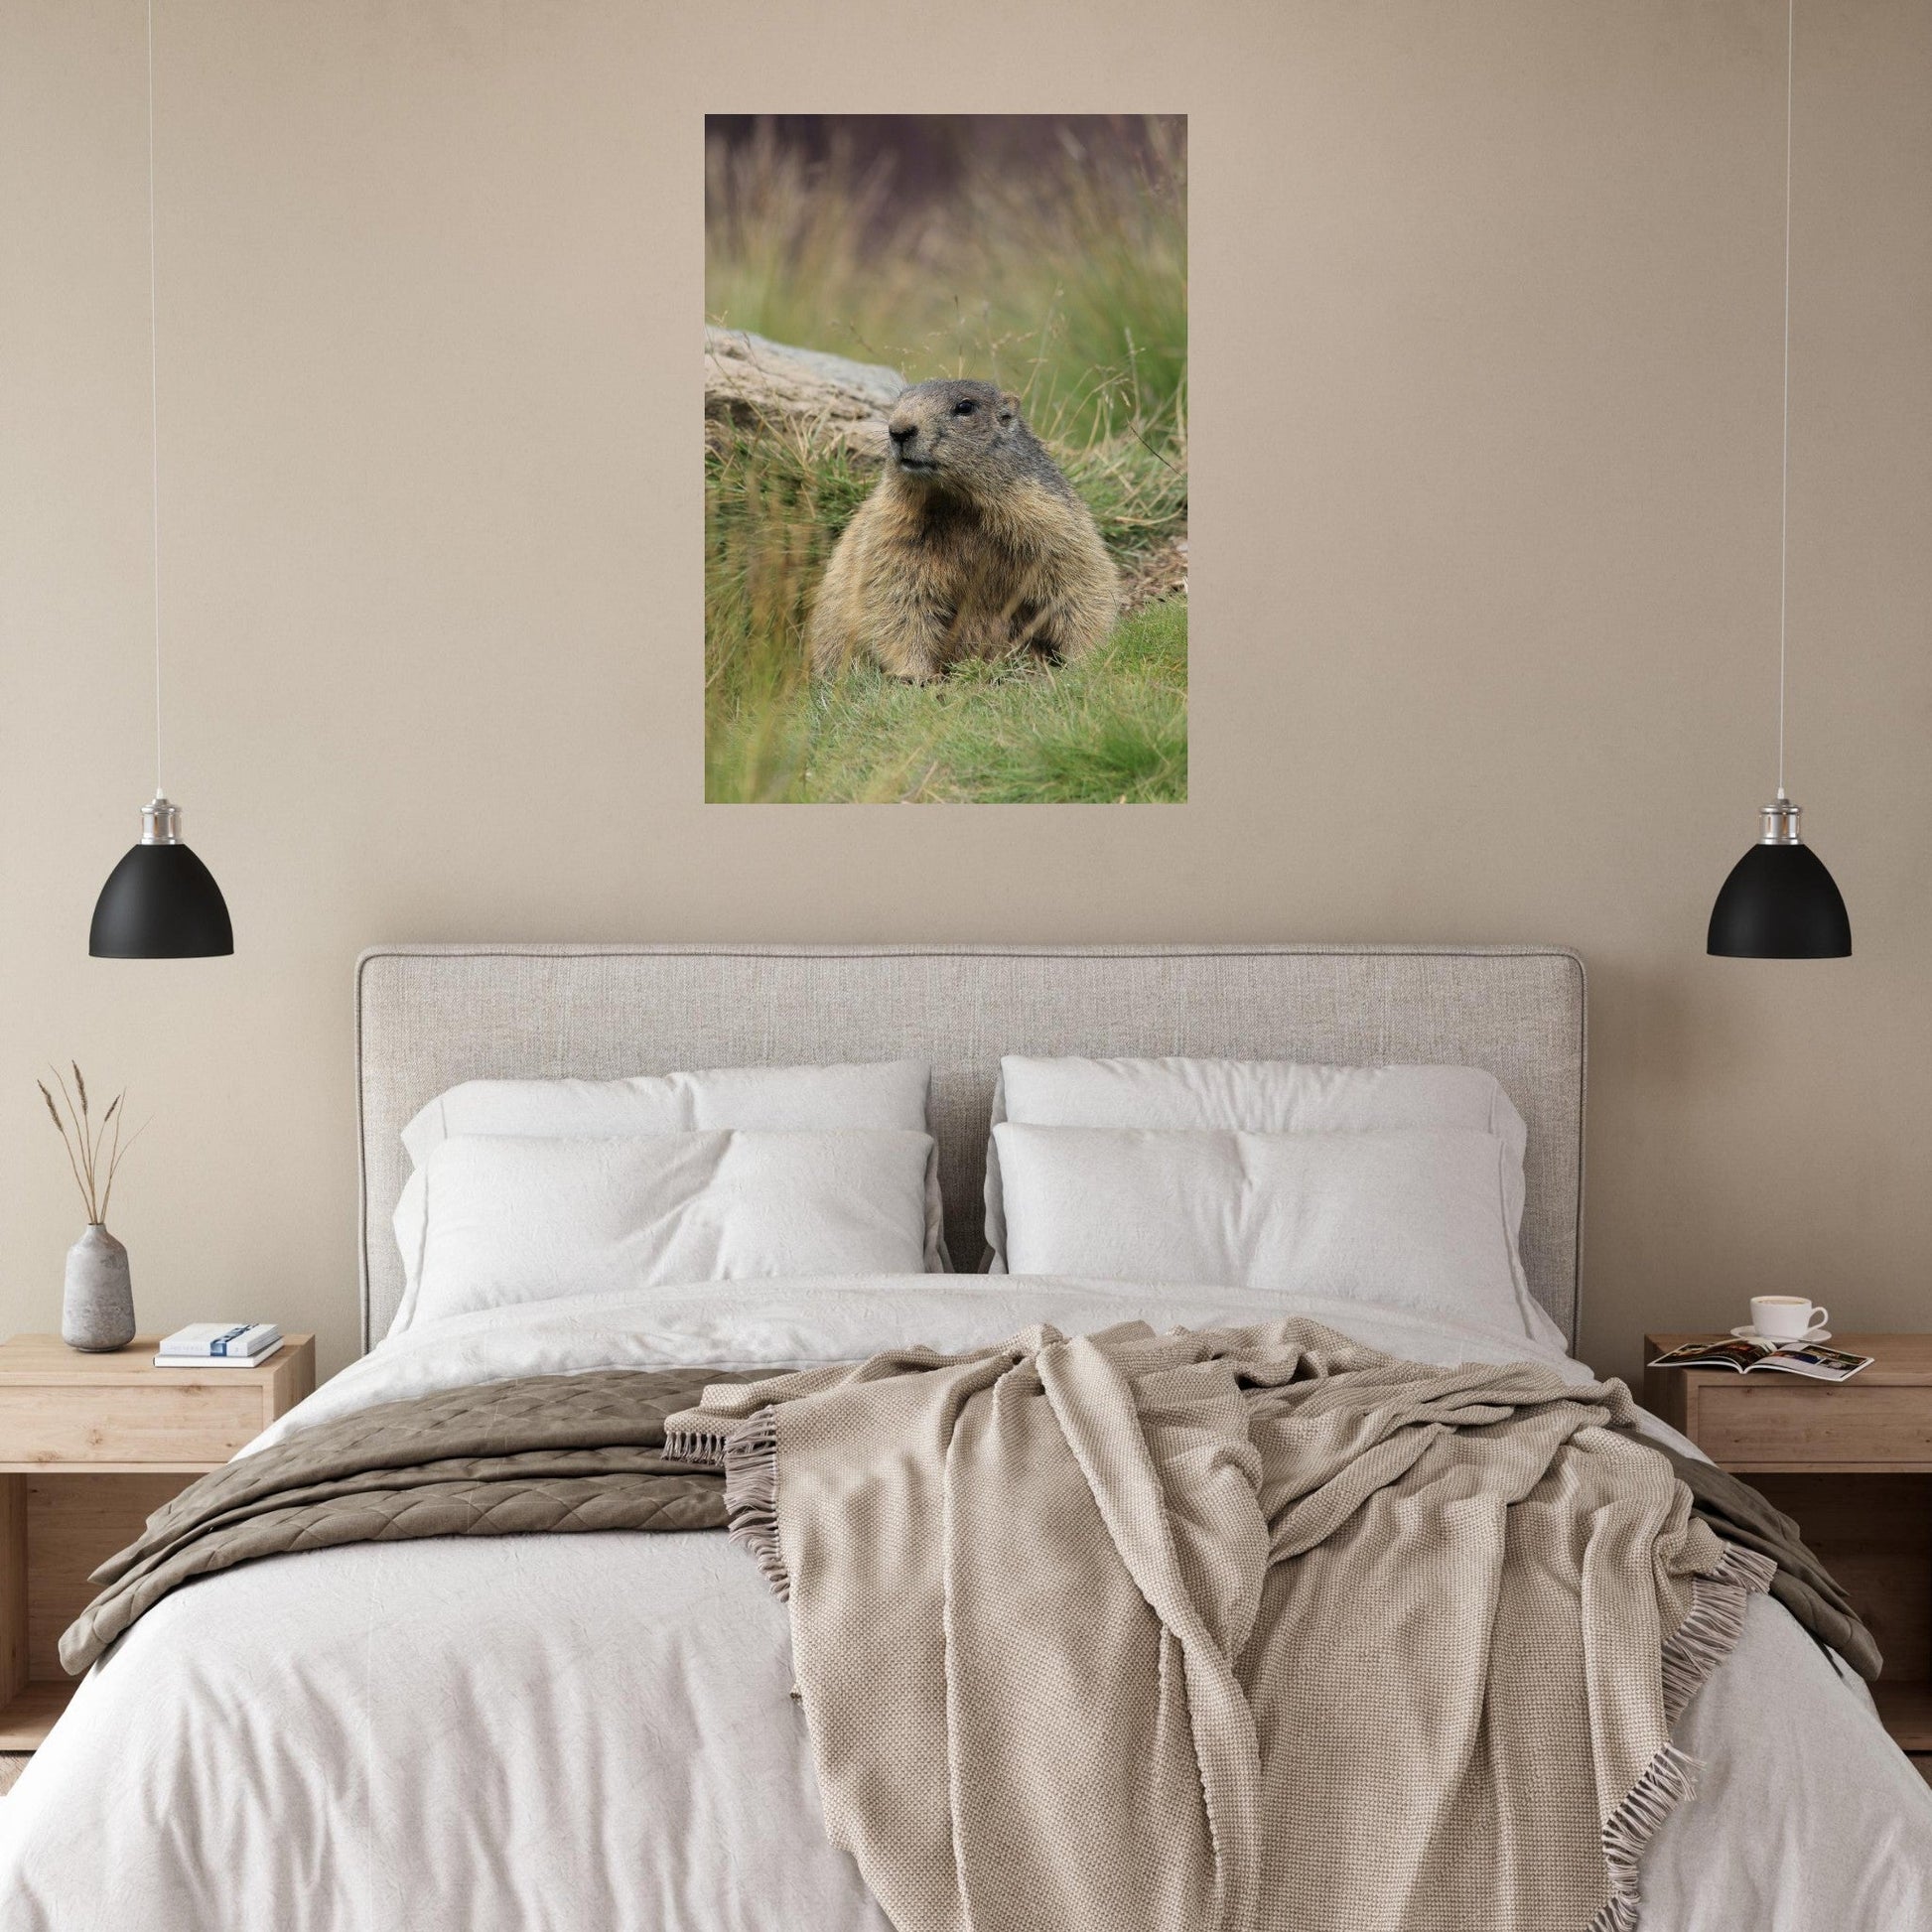 Vente Photo d'une marmotte dans les Alpes #6 - Tableau photo paysage